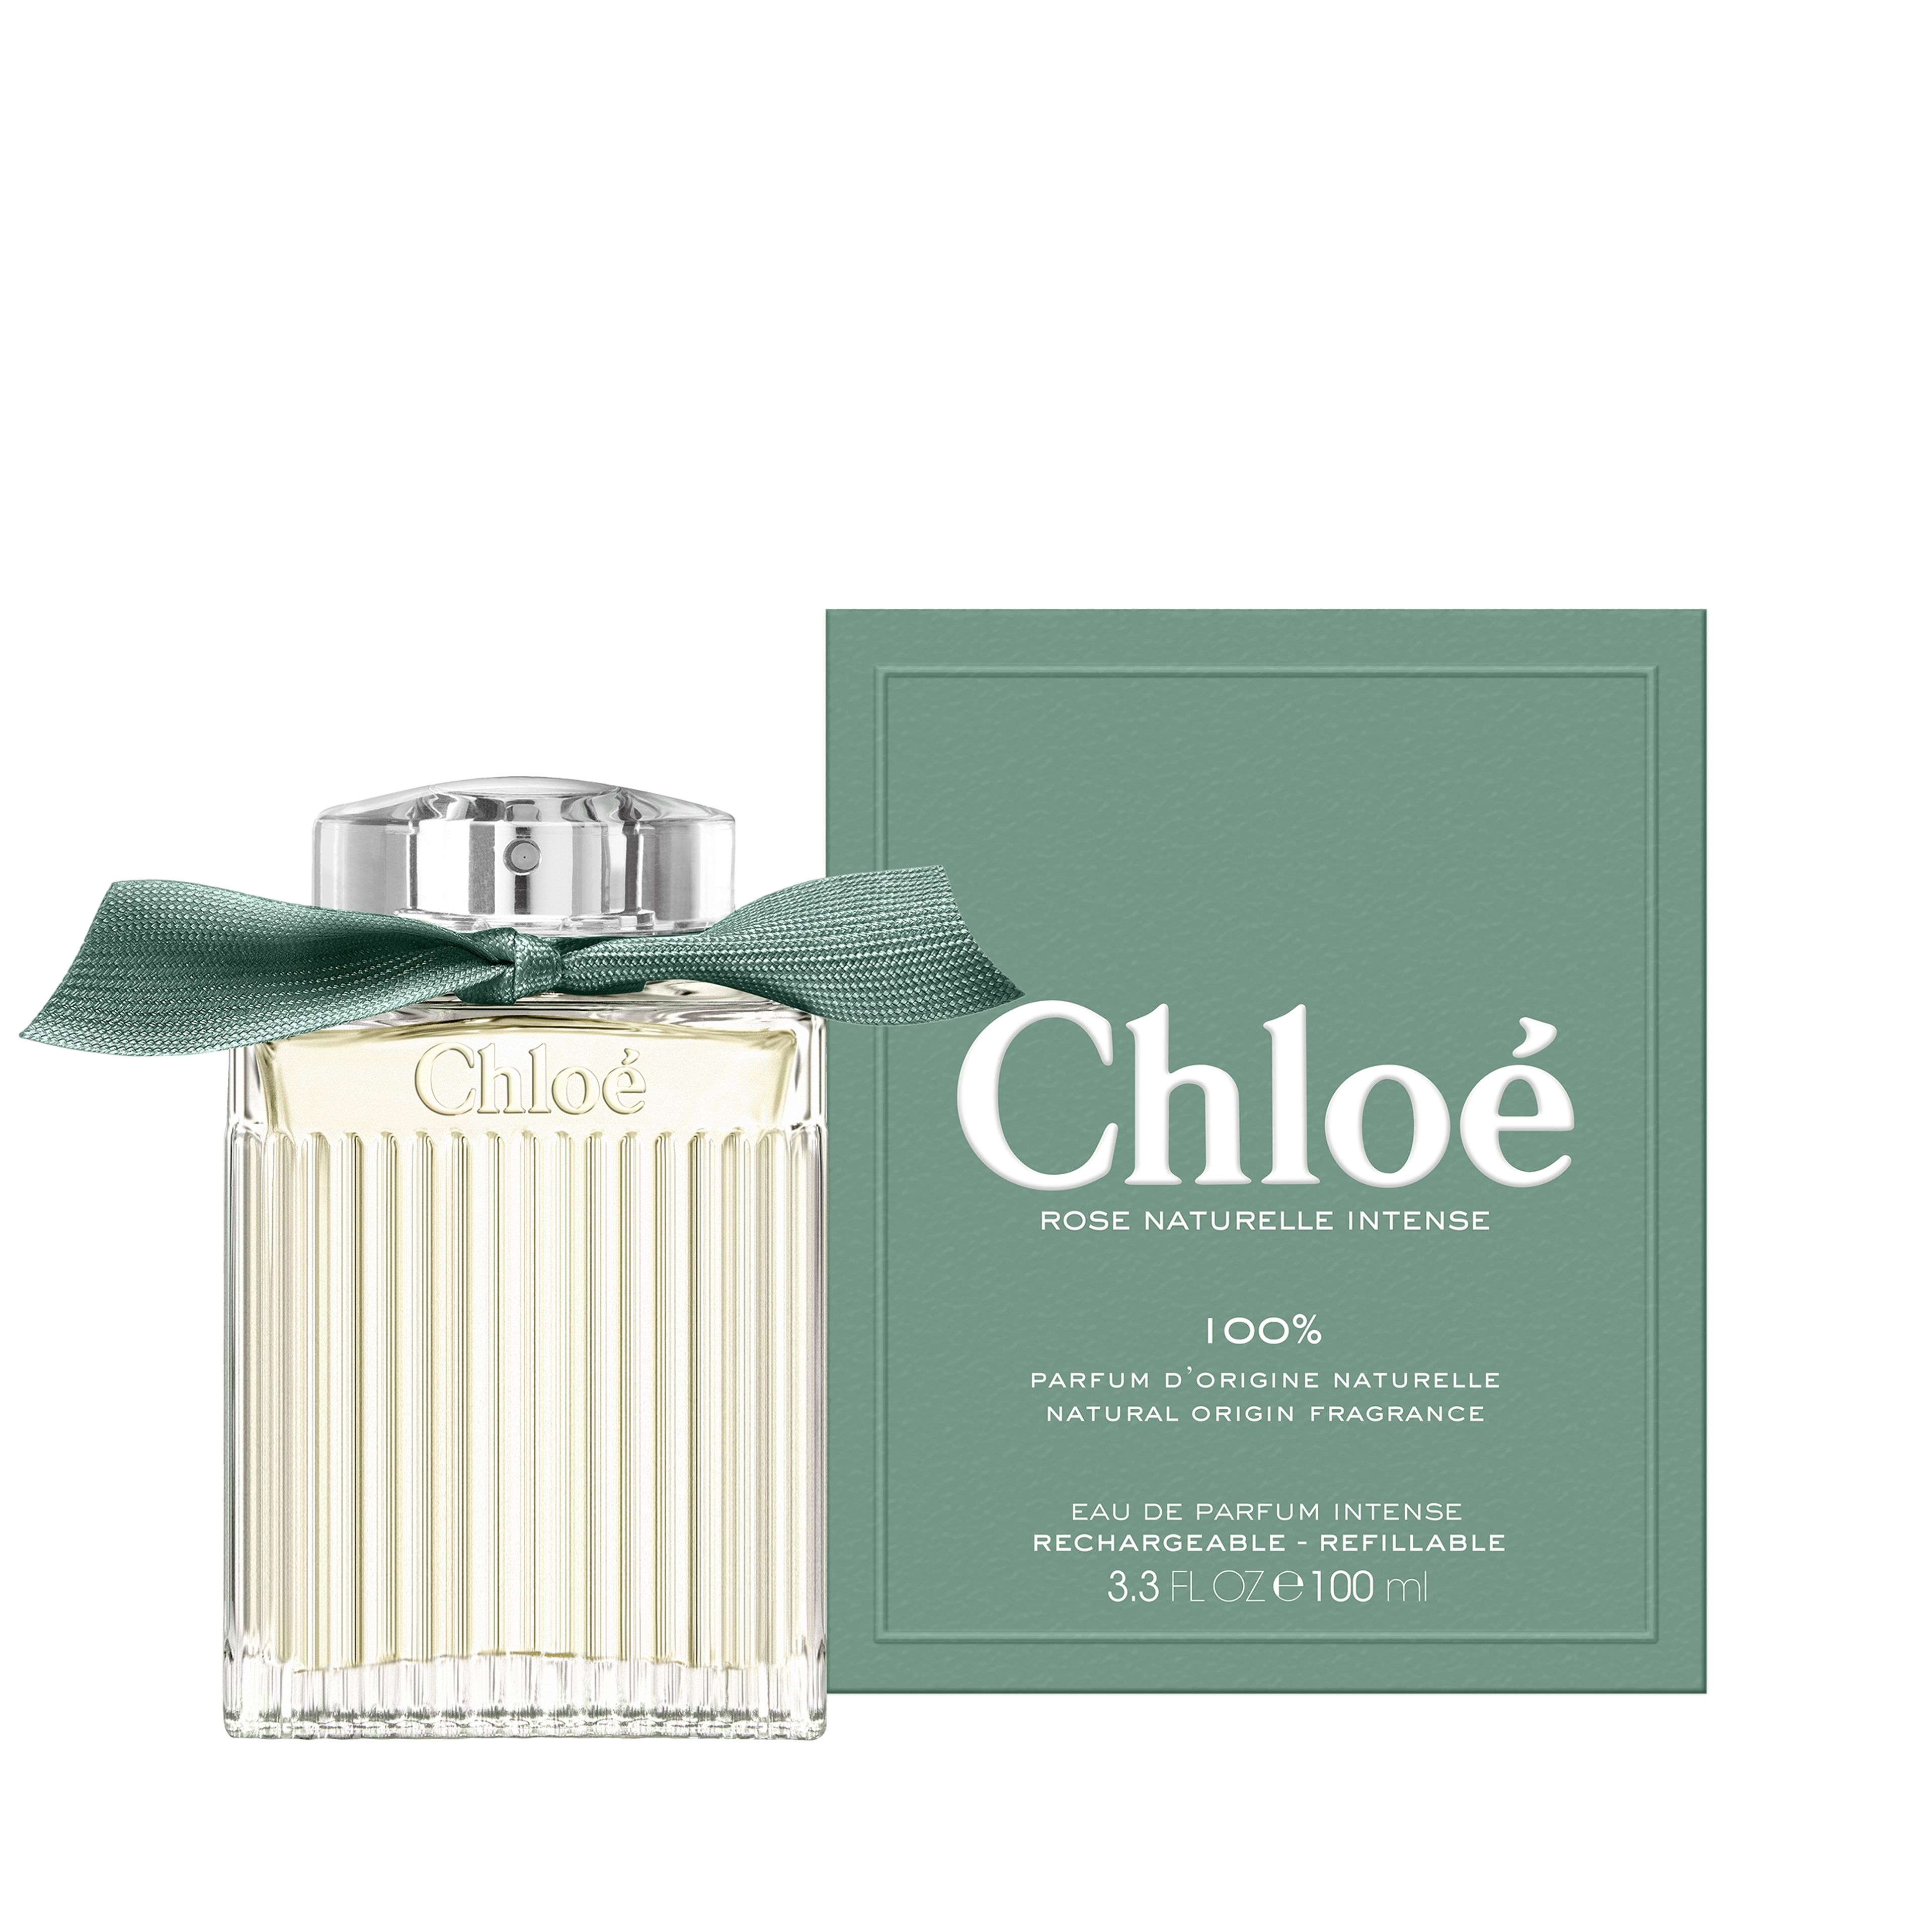 Chloé Chloé Eau De Parfum Intense Rose Naturelle Intense 100 ml 3